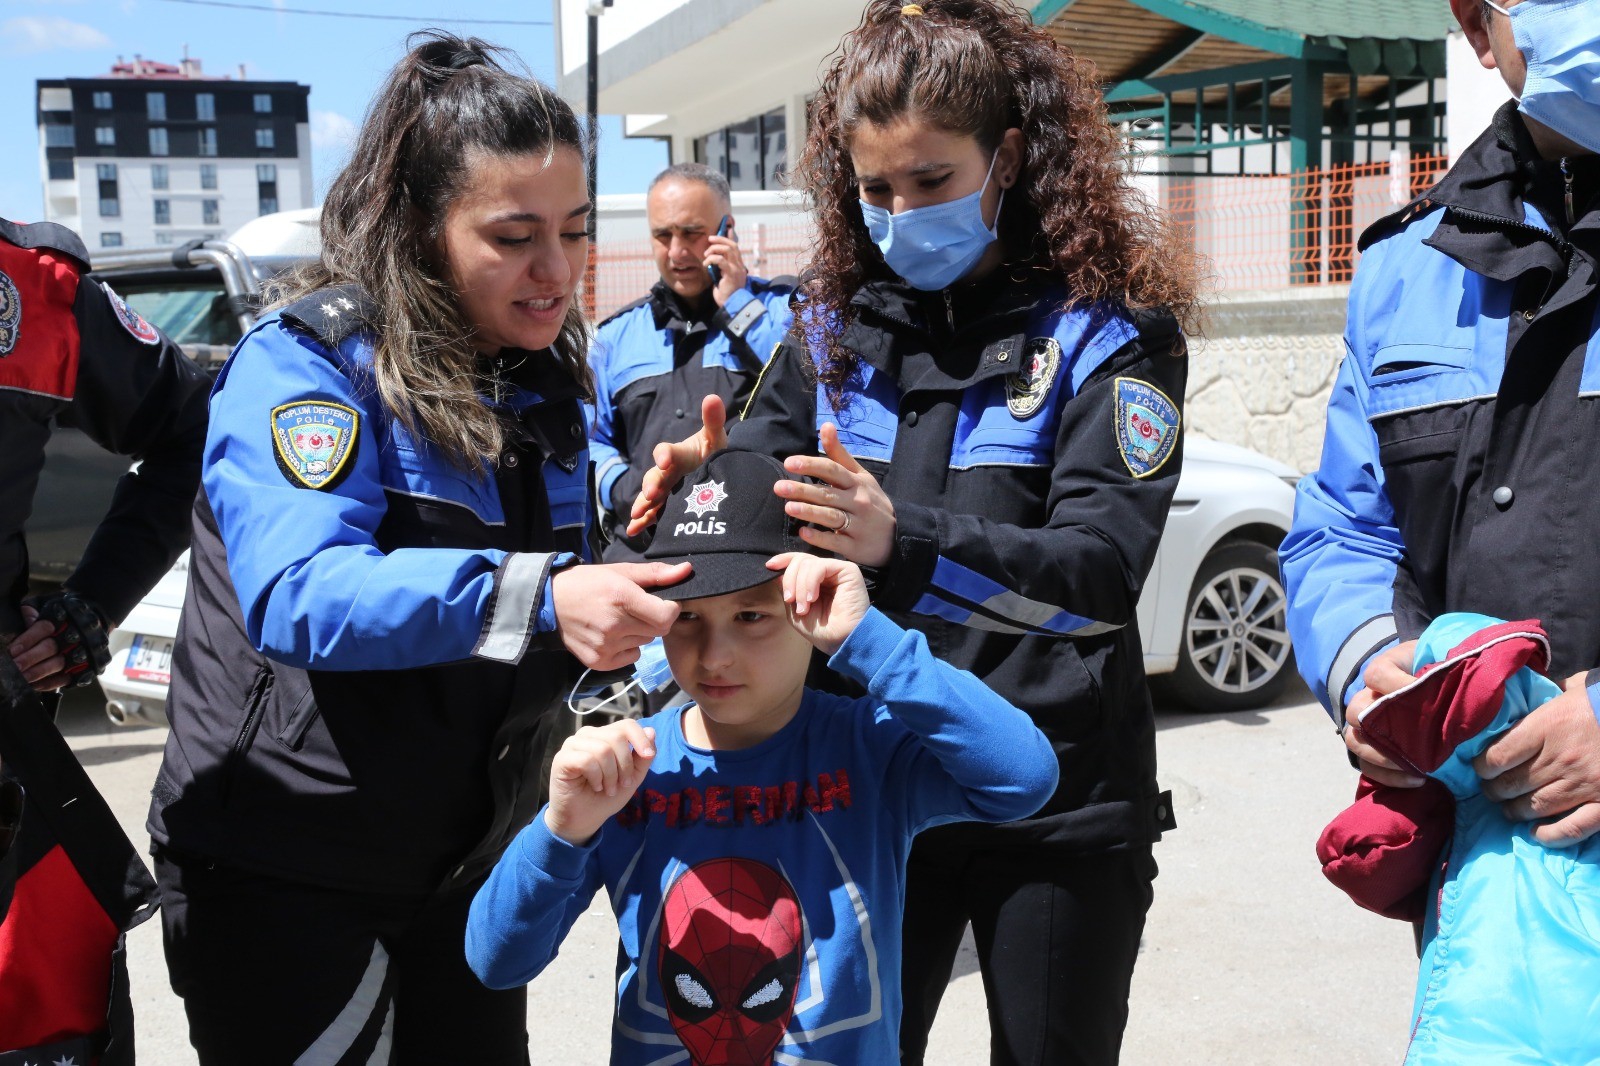 Lösemi hastası küçük çocuğa polislerden duygulandıran sürpriz